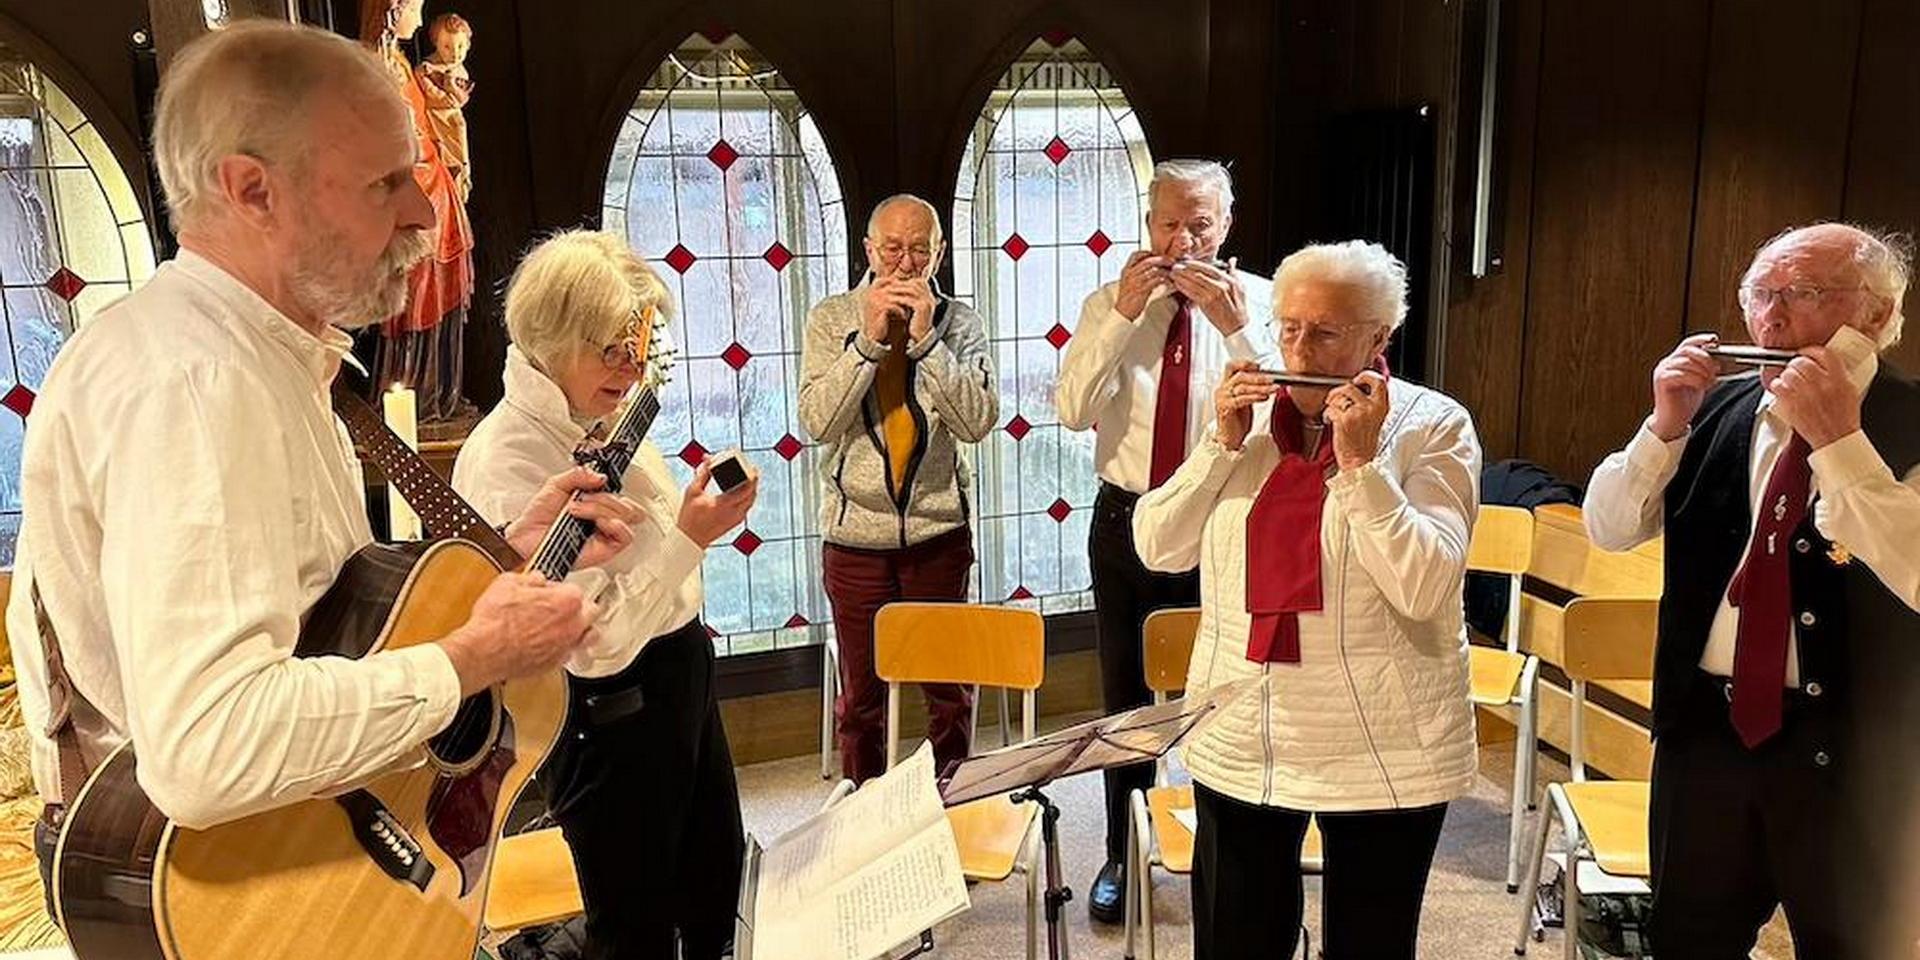 Die Mundharmonikagruppe „Harmonica Sounds“ aus Euskirchen begeisterte die Besucher in der Hauskapelle der Communio in Christo mit klassischen englischen und deutschen Weihnachtsliedern nach der Messe am ersten Weihnachtstag.